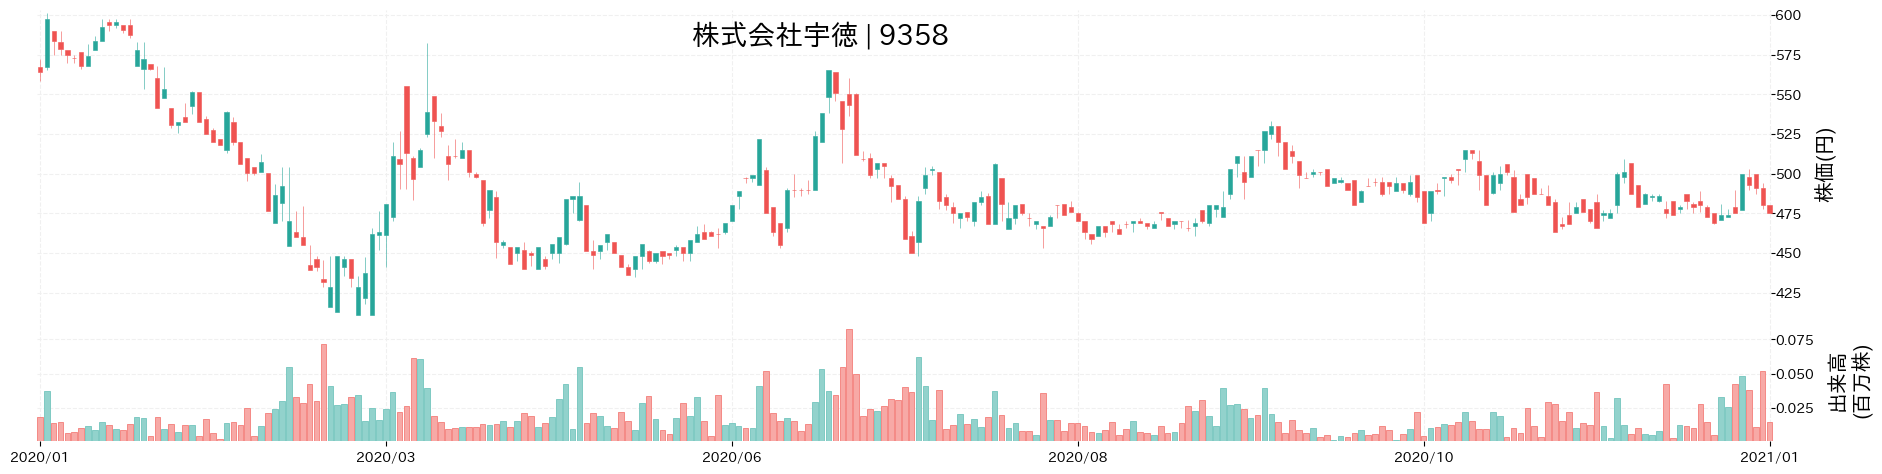 宇徳の株価推移(2020)